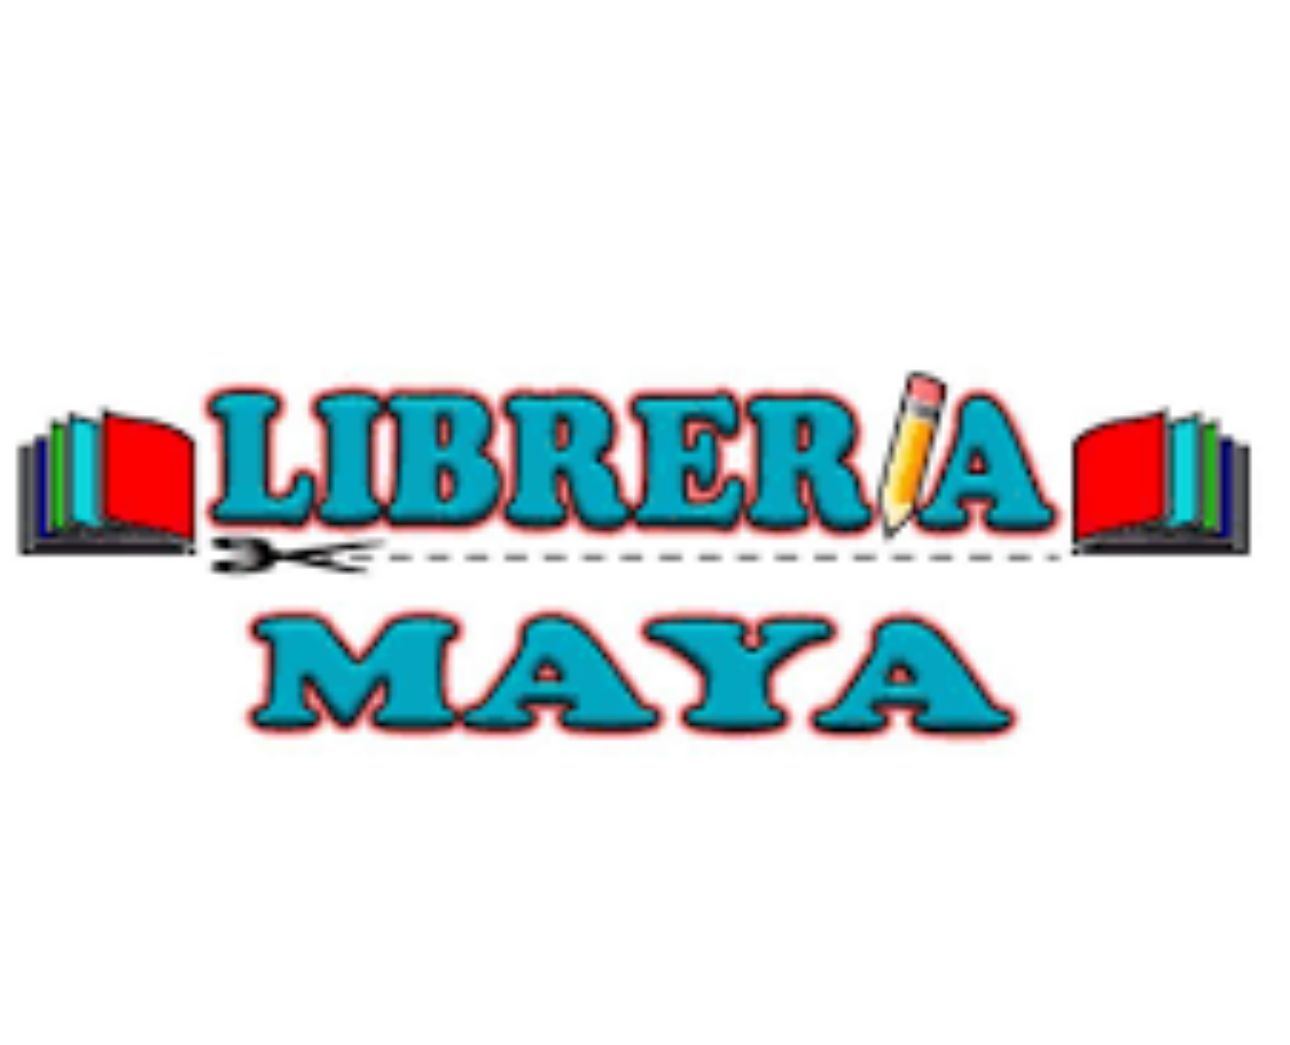 Libreria y papeleria maya